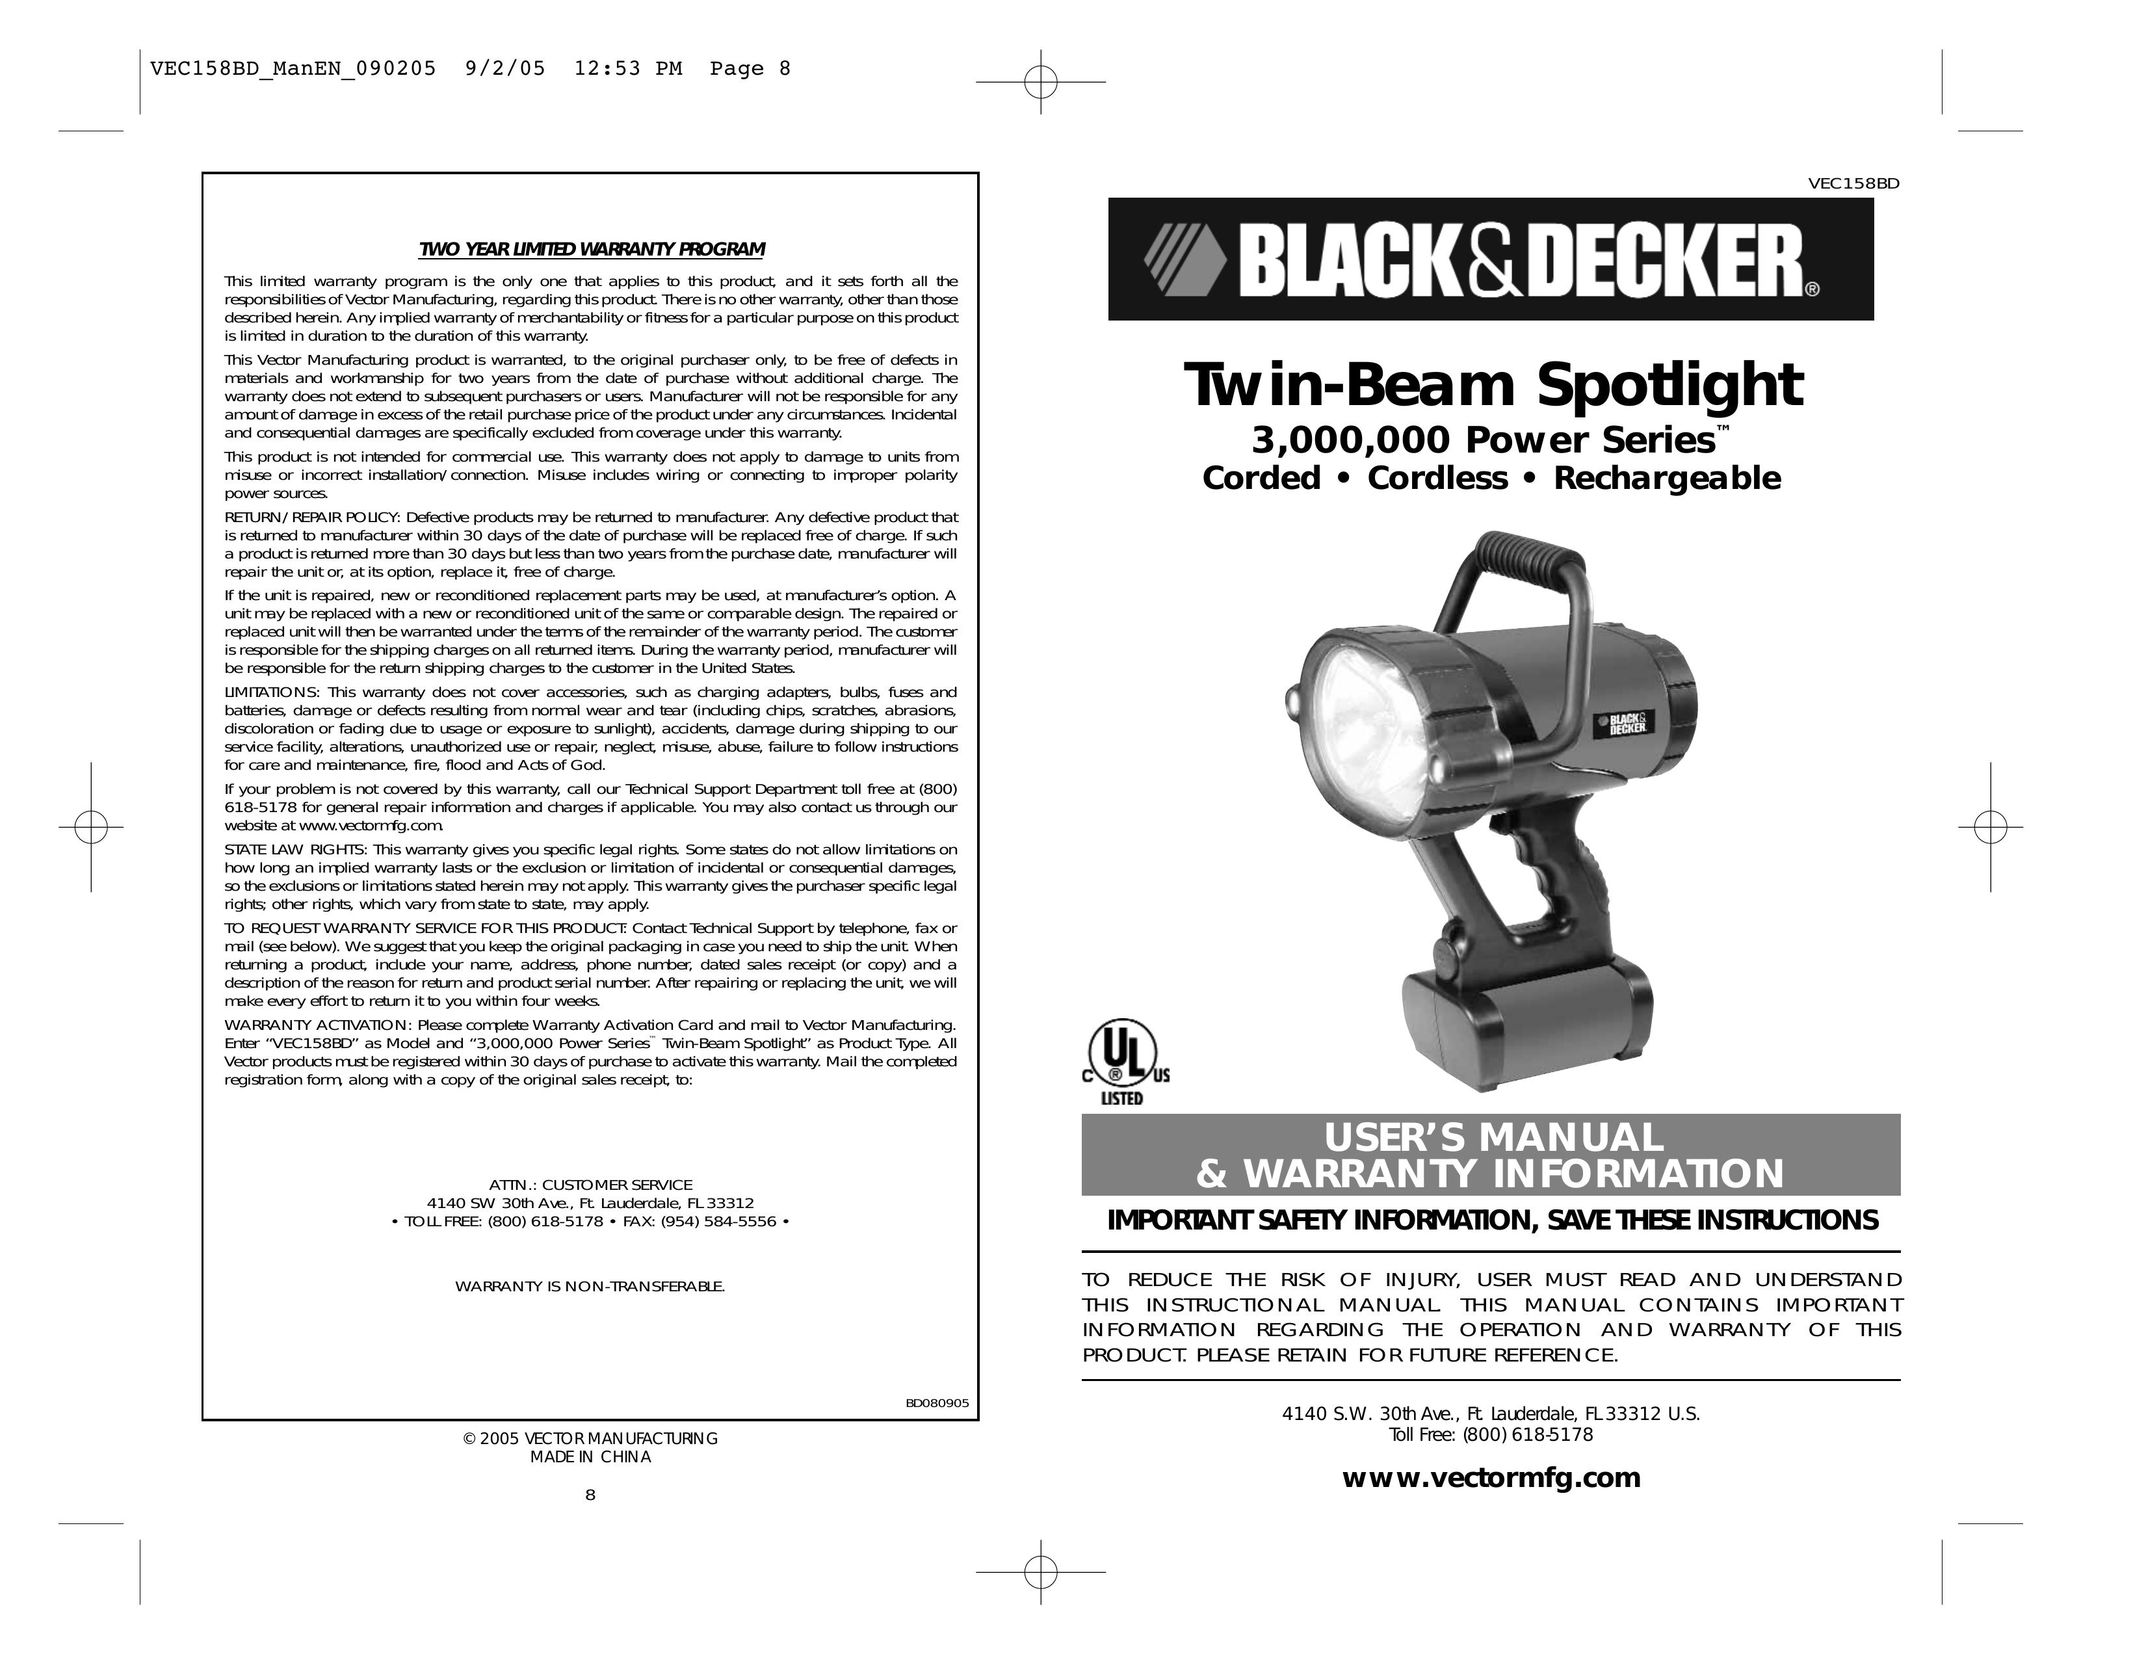 Black & Decker VEC158BD Work Light User Manual